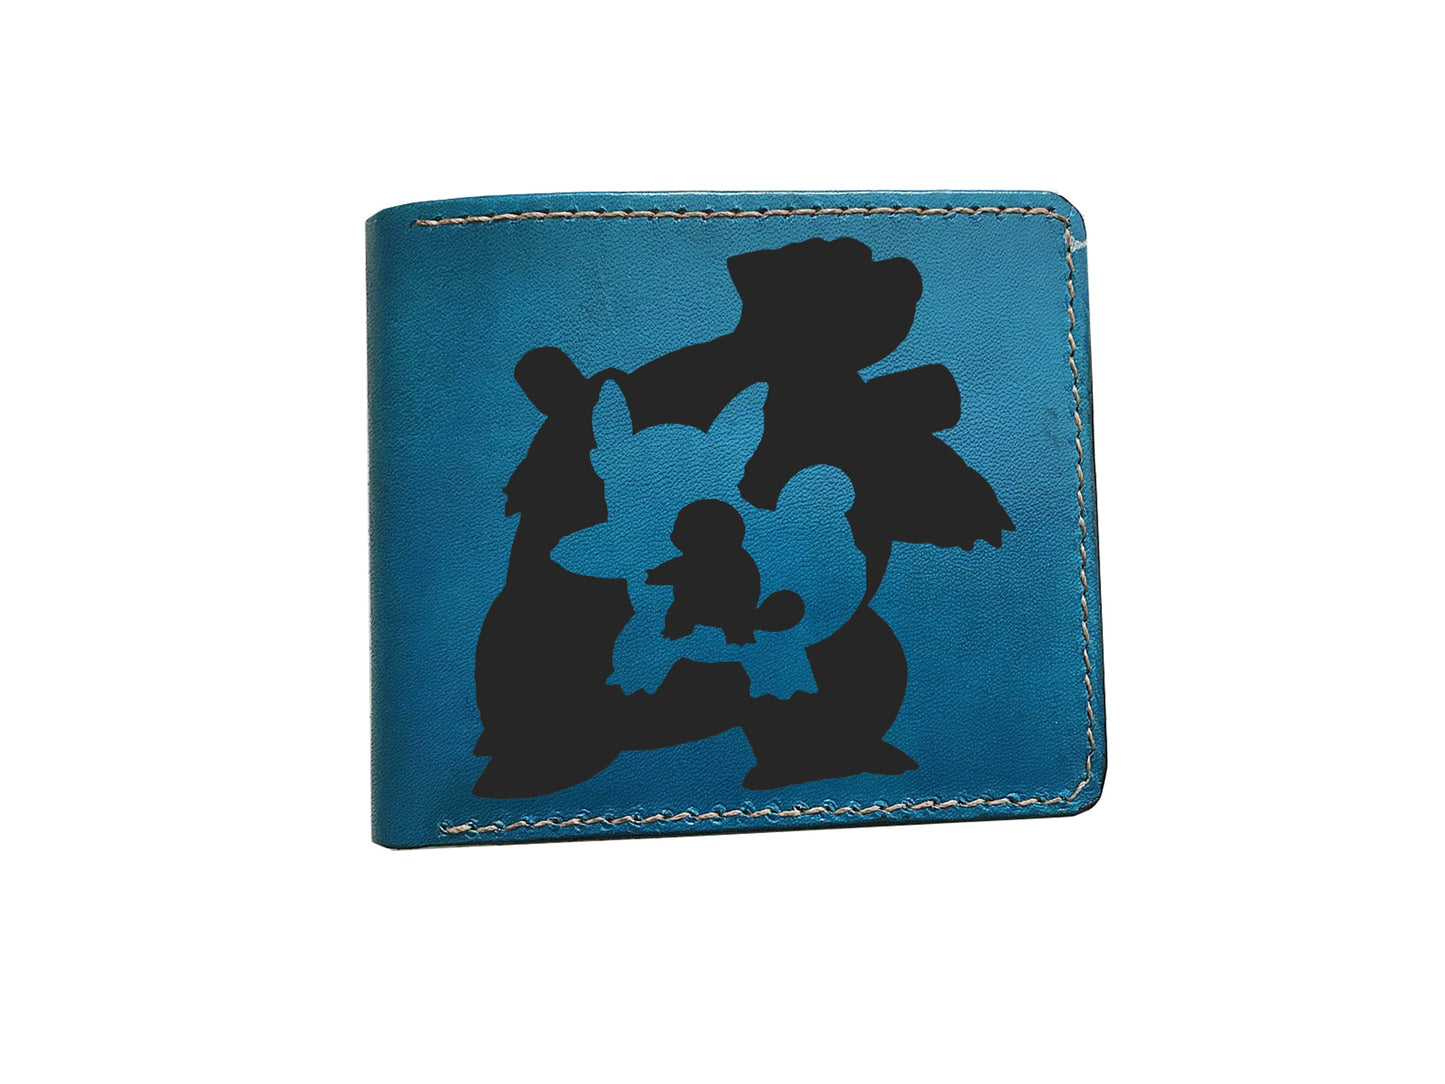 Mayan Corner - Custom Pokemon evolution men's wallet, Charmander pokemon wallet, bulbasaur leather gift, pokemon leather gift for him